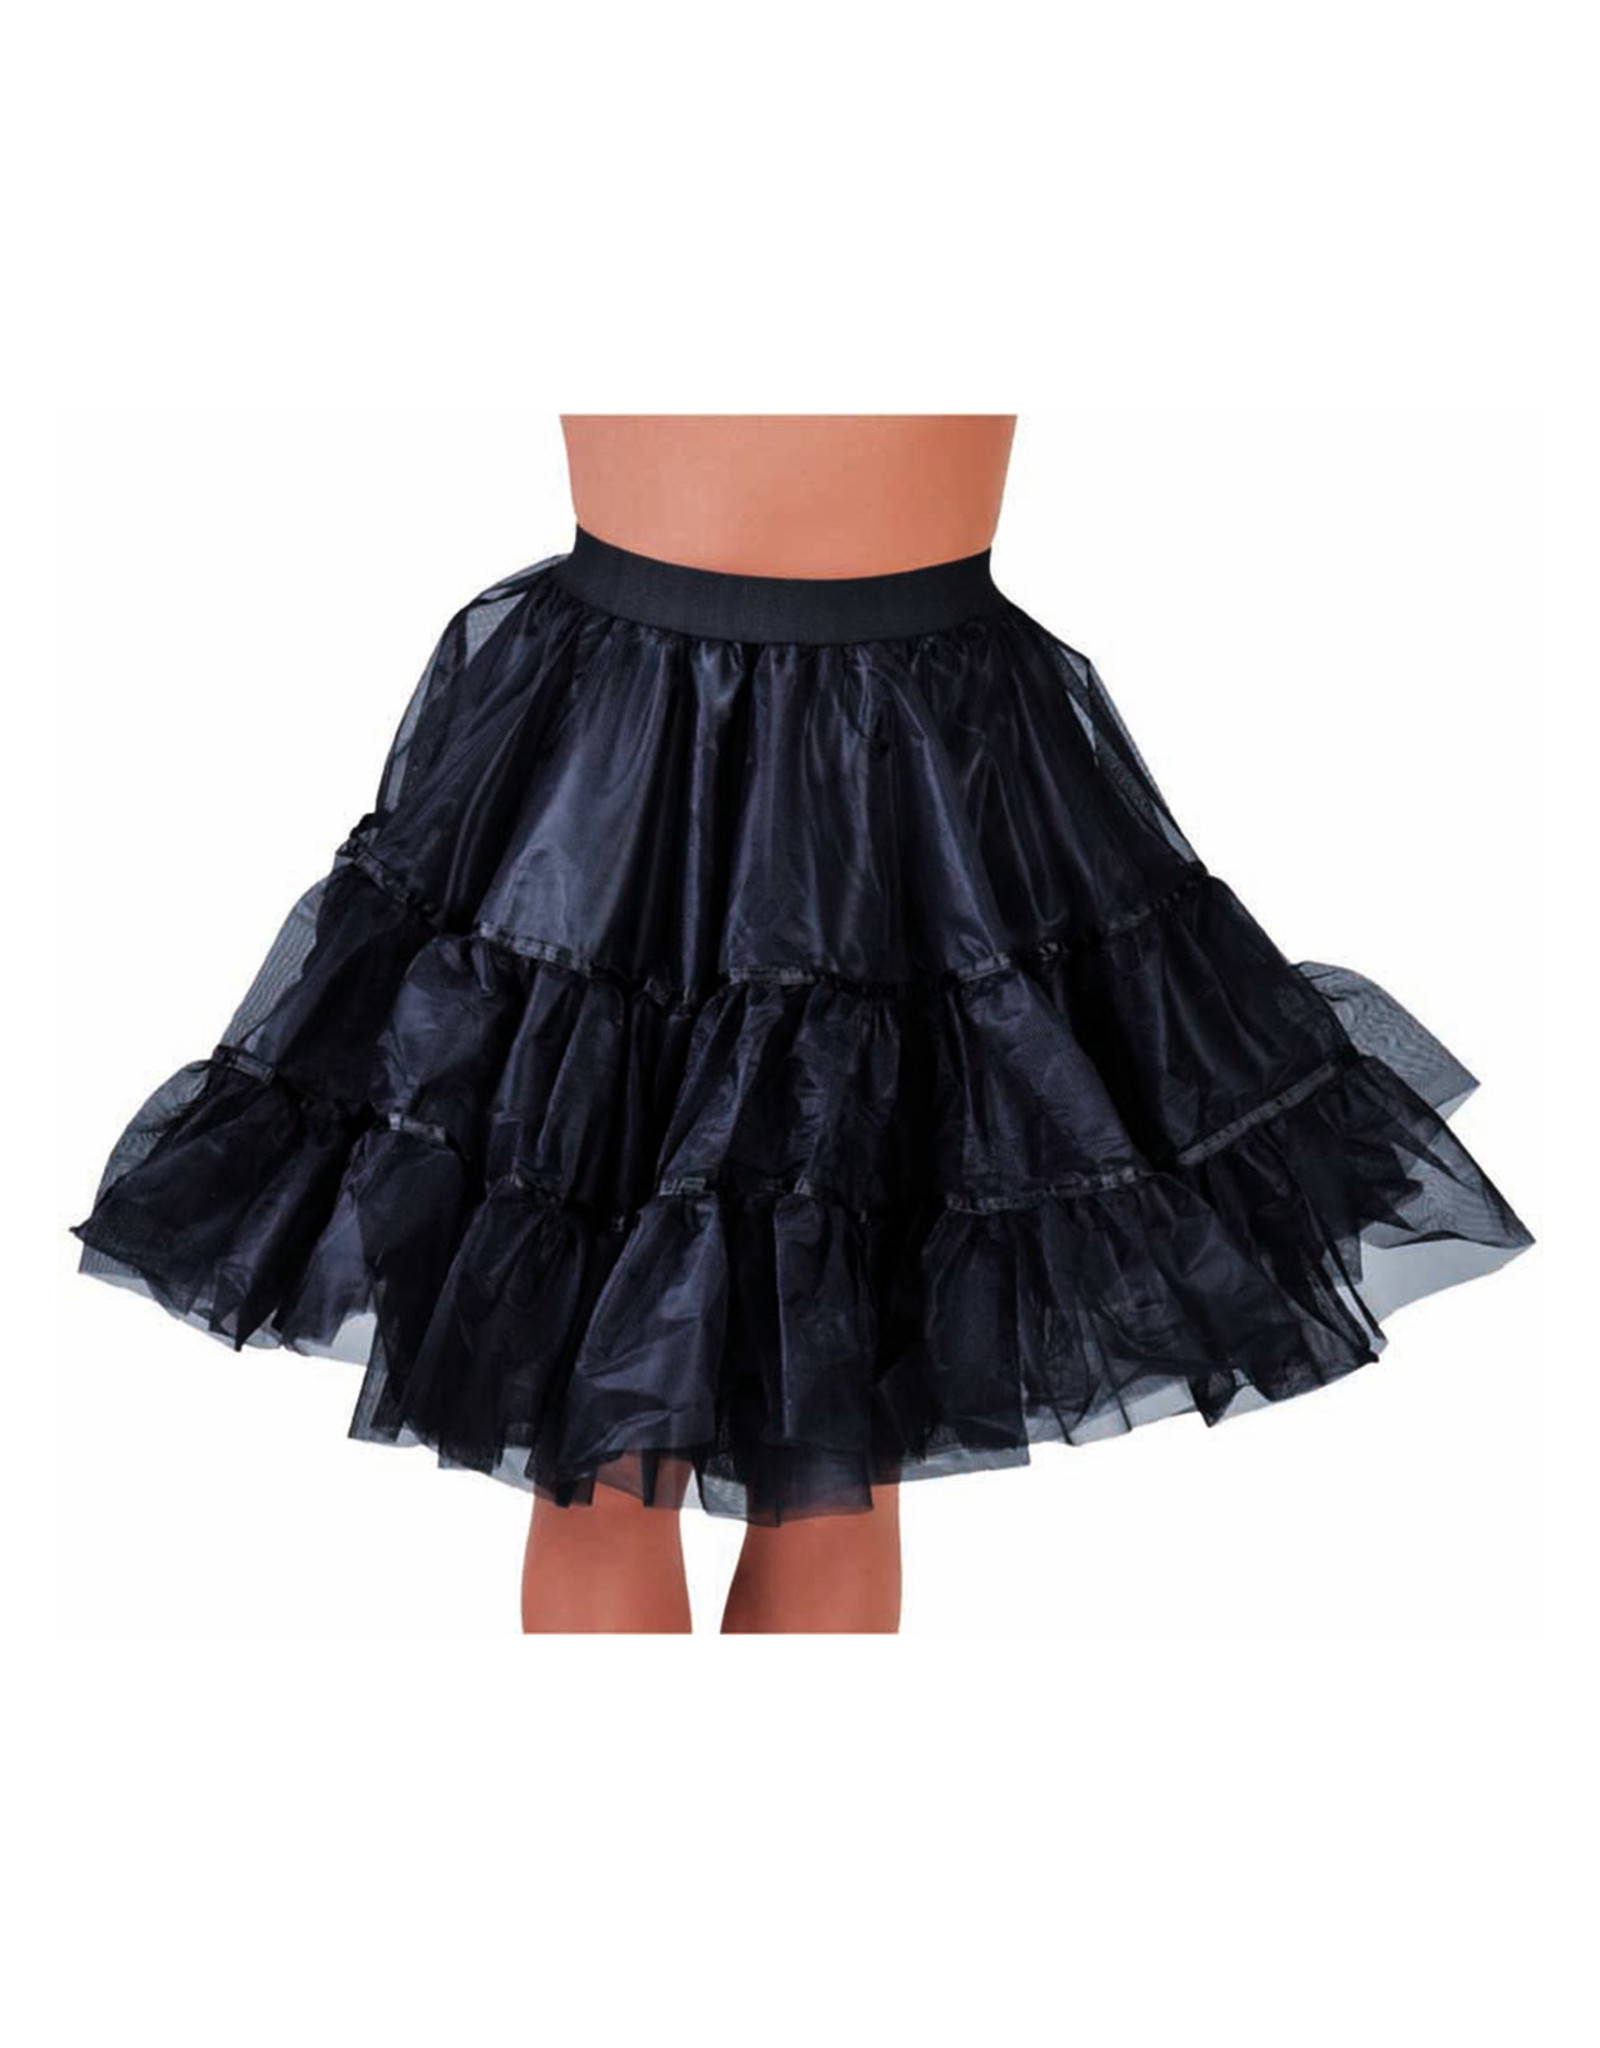 Petticoat Zwart middel lang, elastique